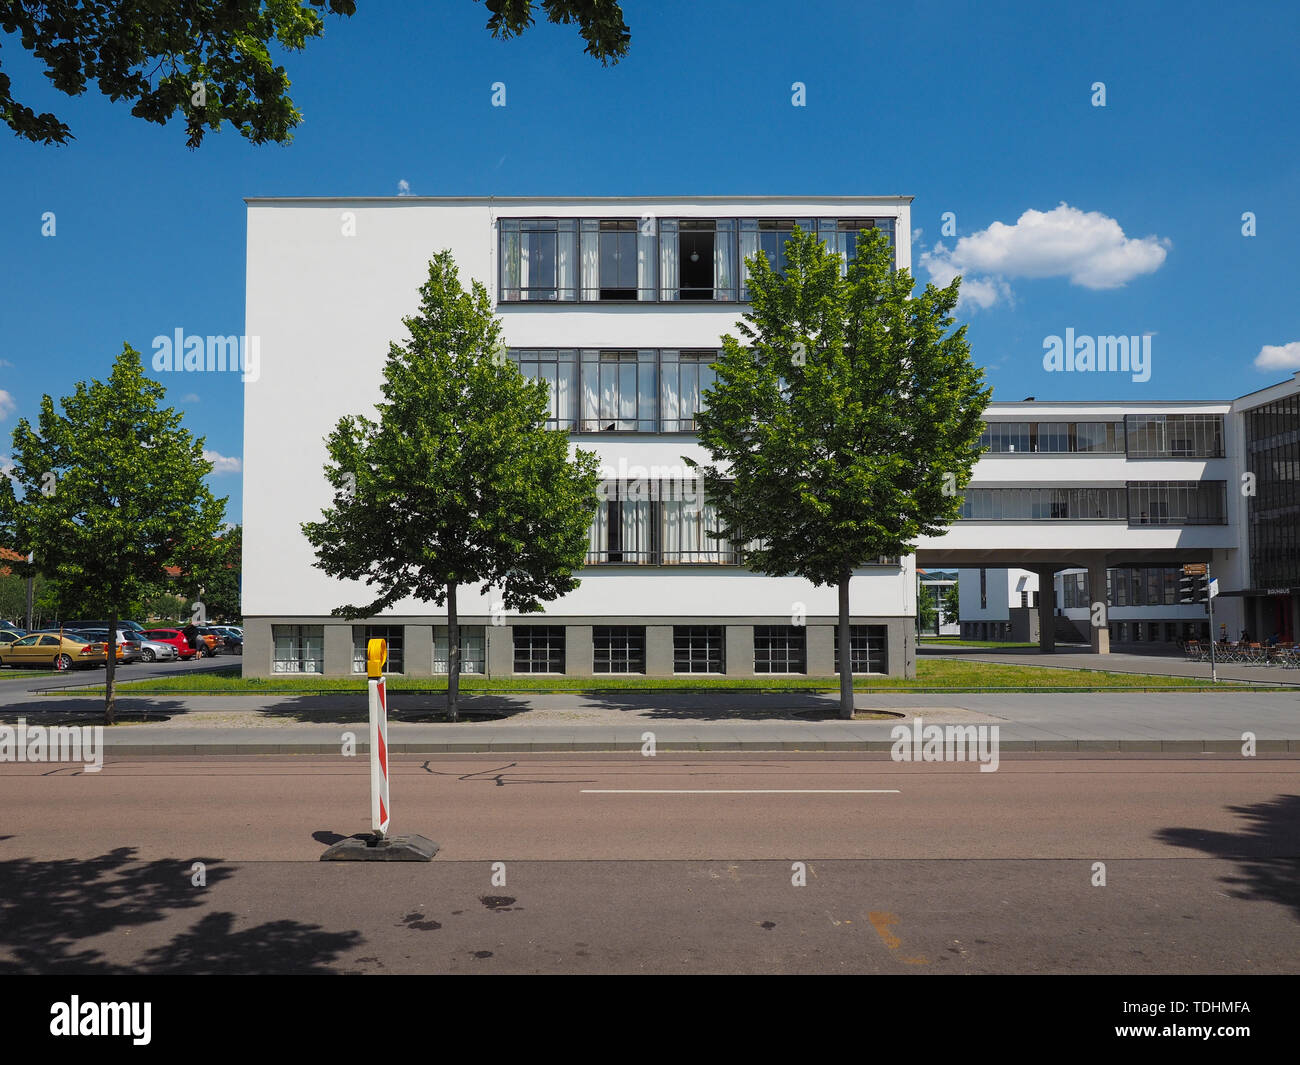 DESSAU, ALLEMAGNE - circa 2019 JUIN : l'école d'art Bauhaus emblématique bâtiment conçu par l'architecte Walter Gropius en 1925 Banque D'Images